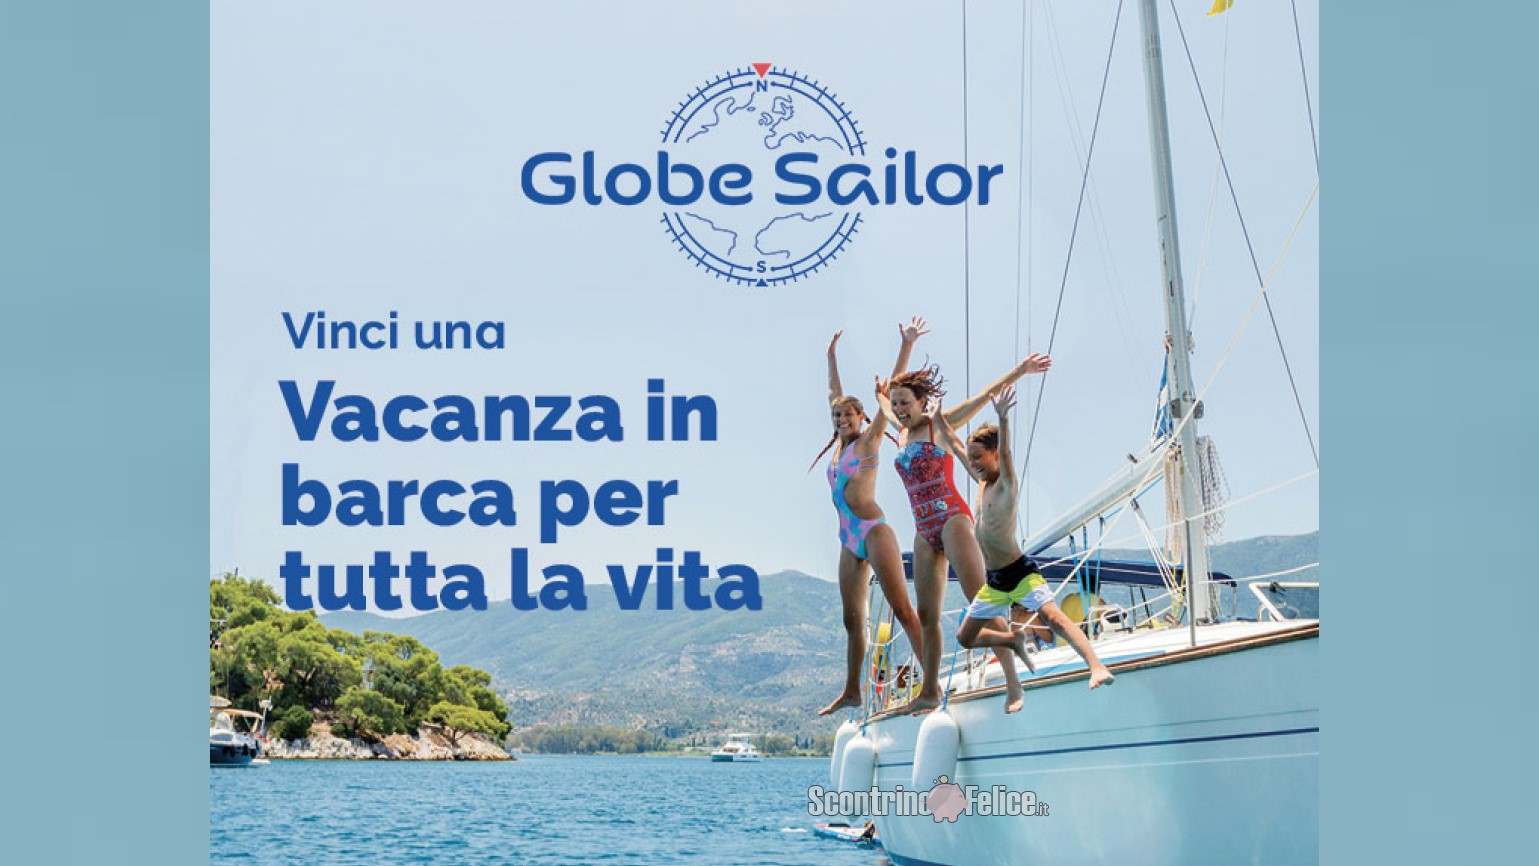 Vinci gratis una vacanza in barca per sempre con GlobeSailor